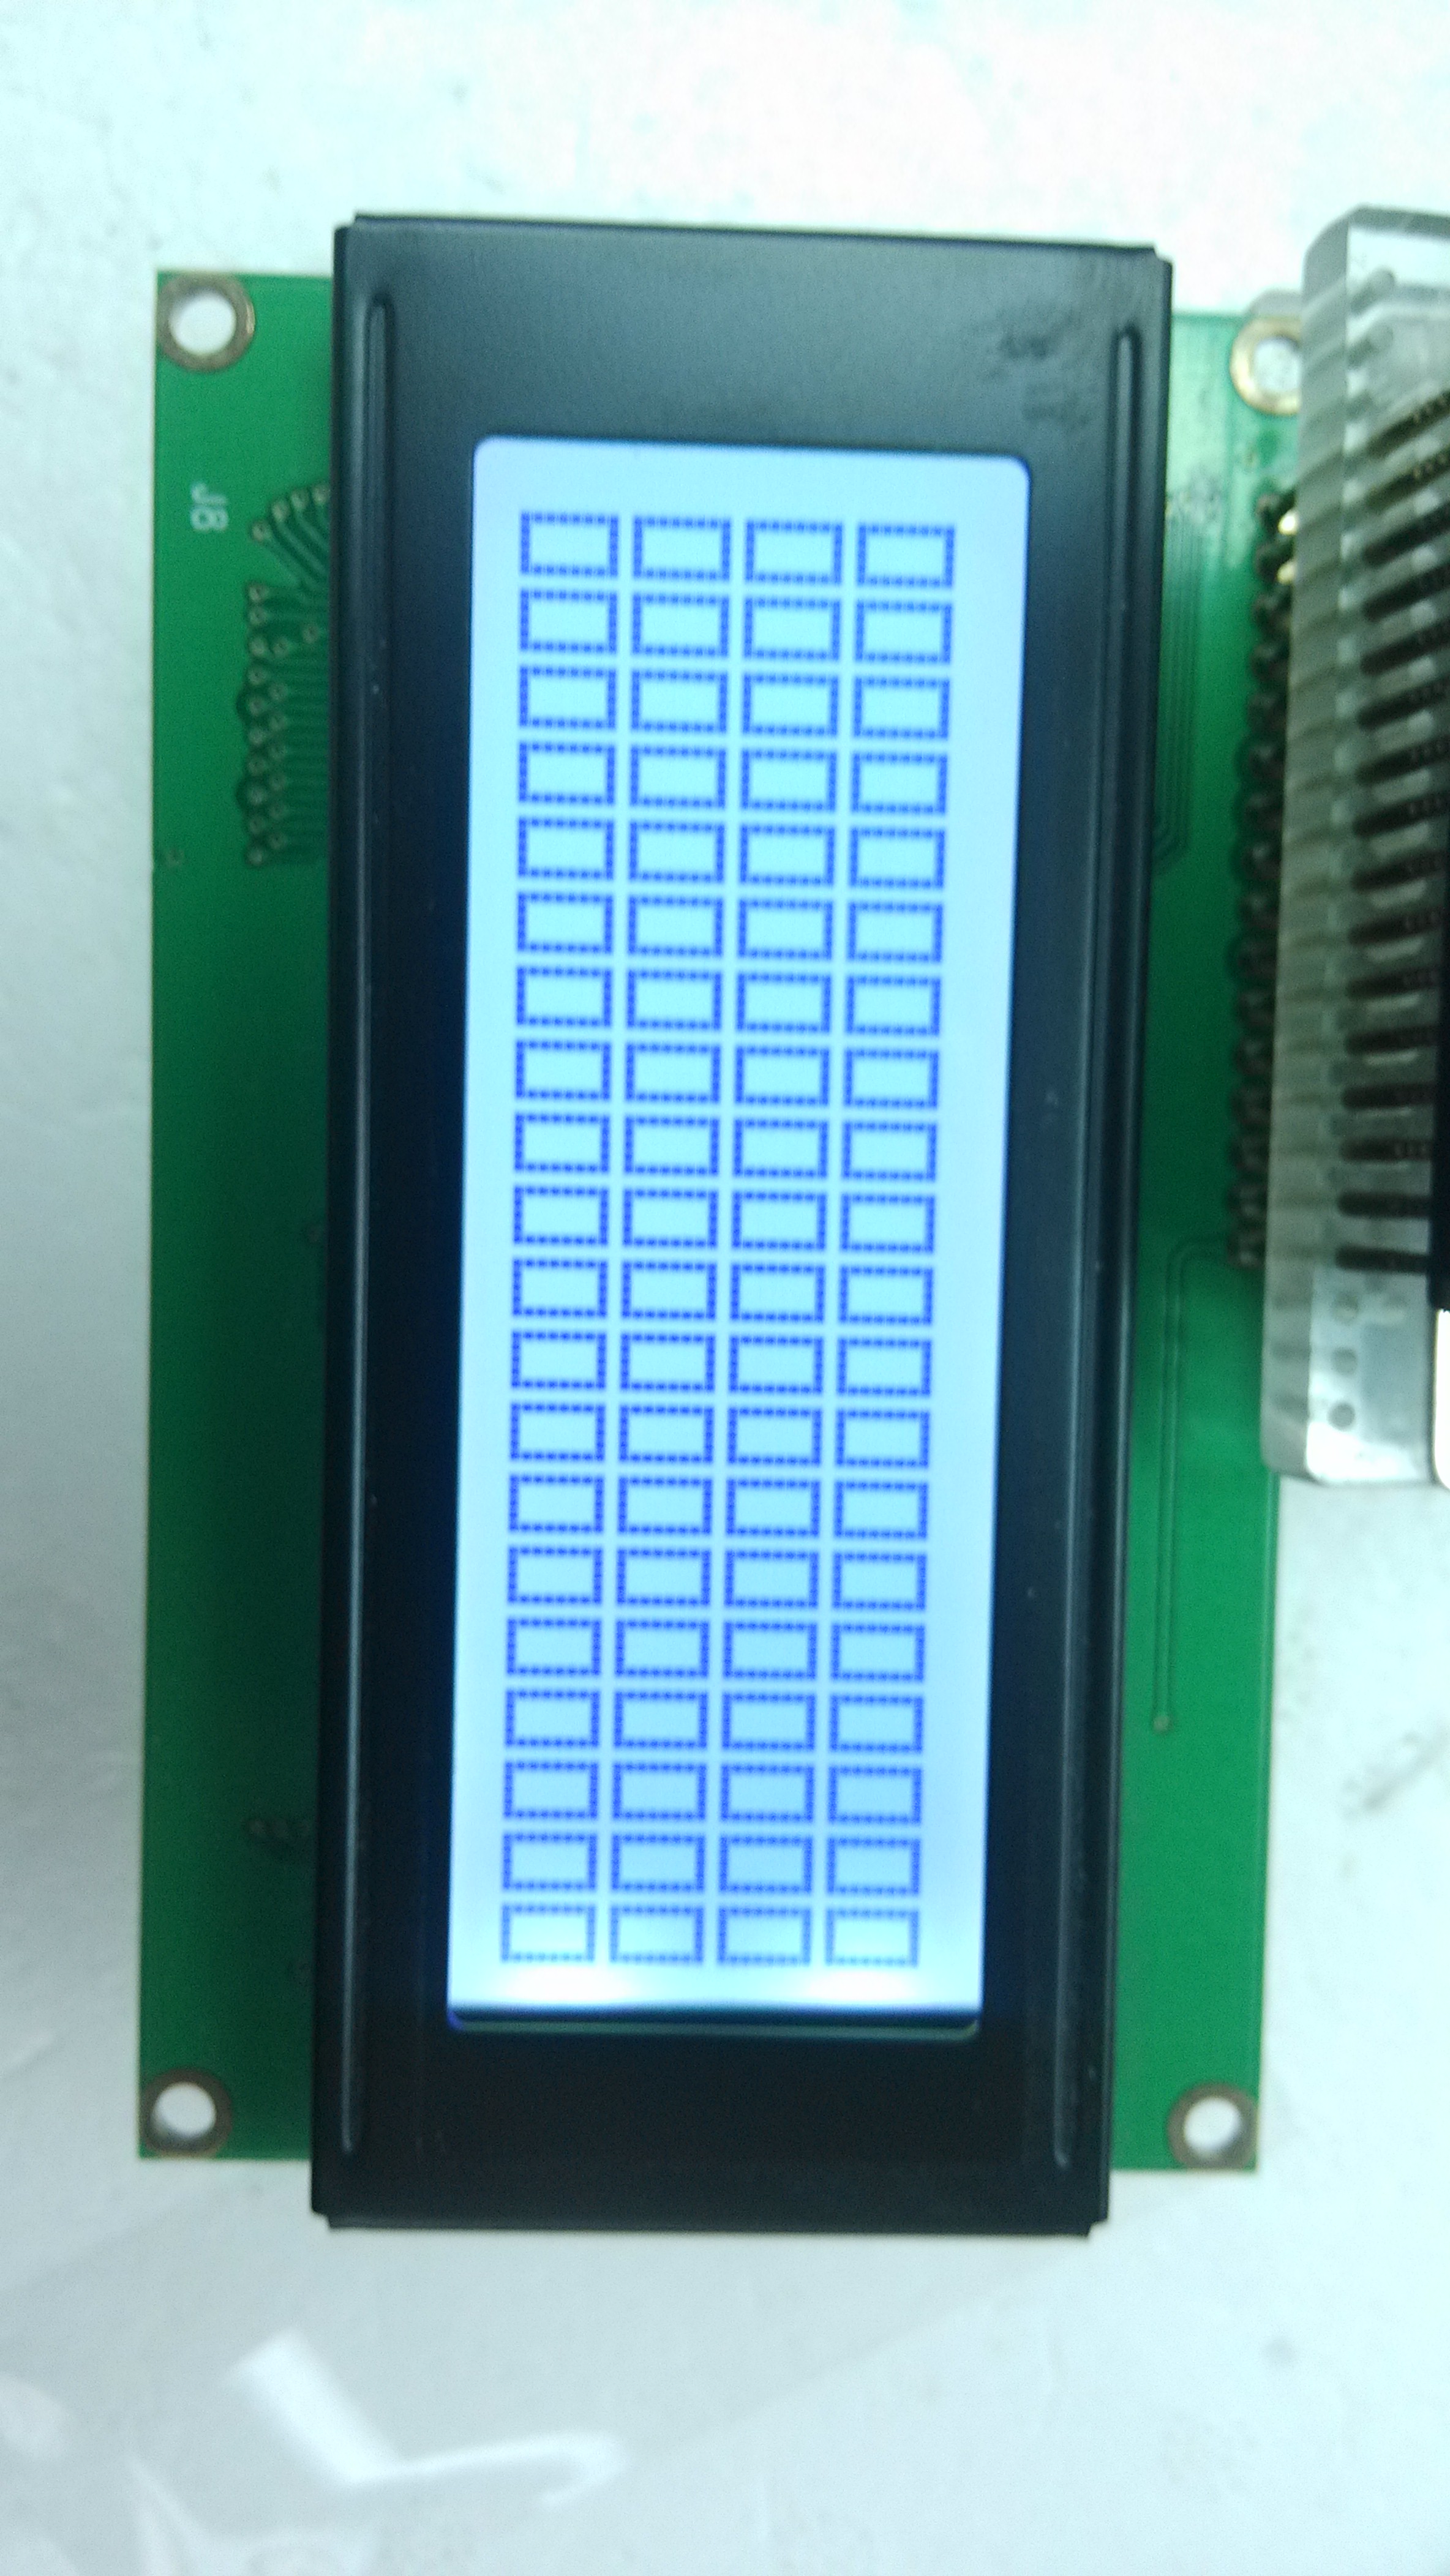 深圳远望石厂家直销WSM2004-1液晶显示模块 lcd液晶屏批发